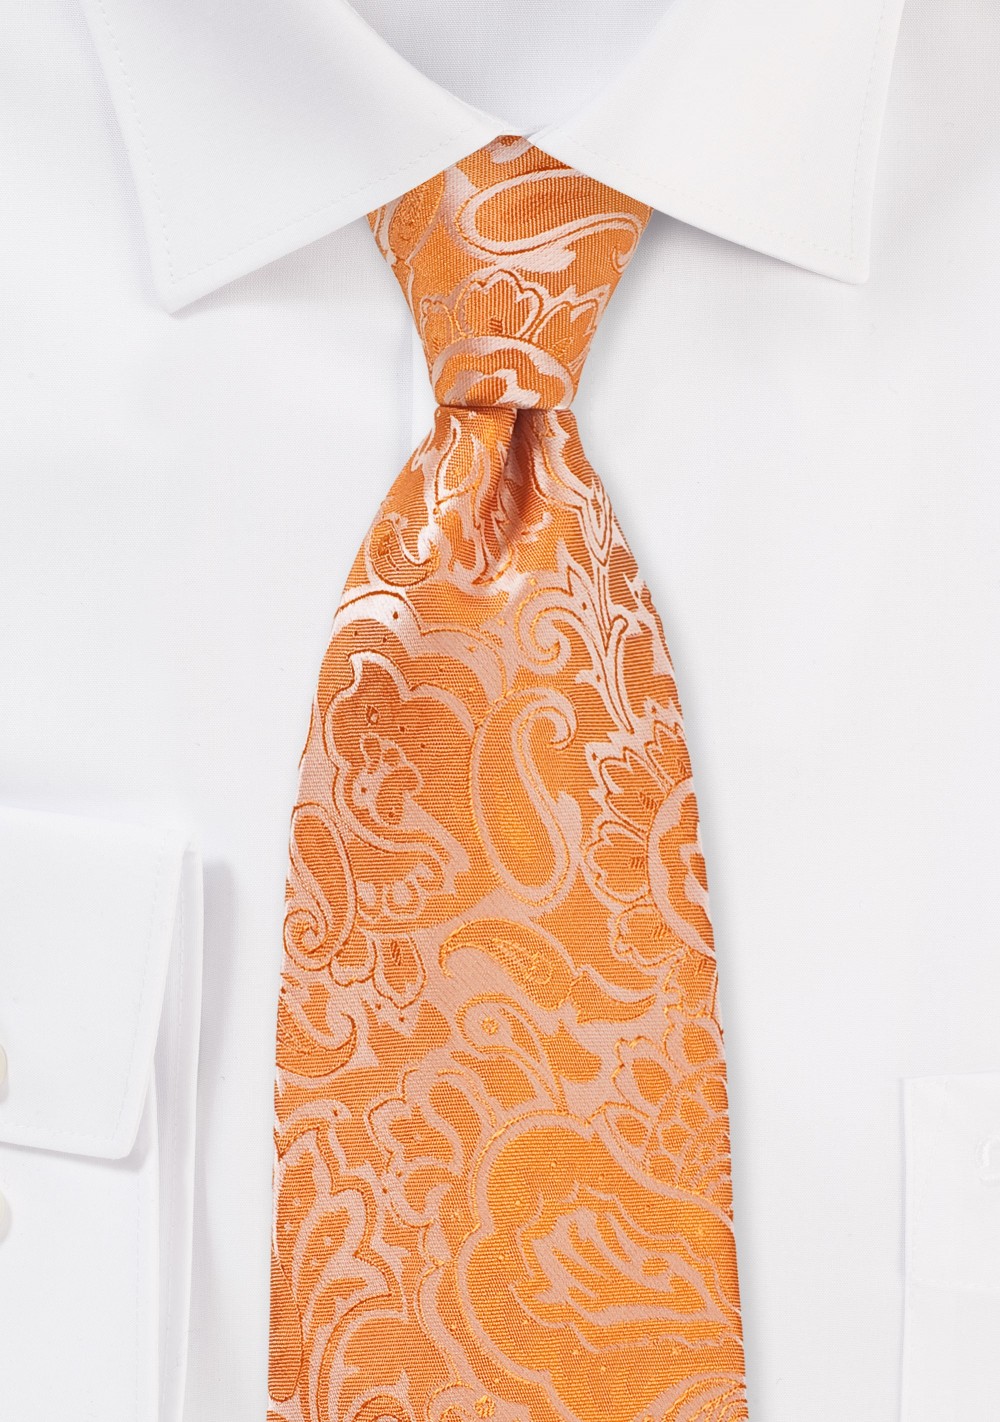 Tangelo Orange Paisley Tie